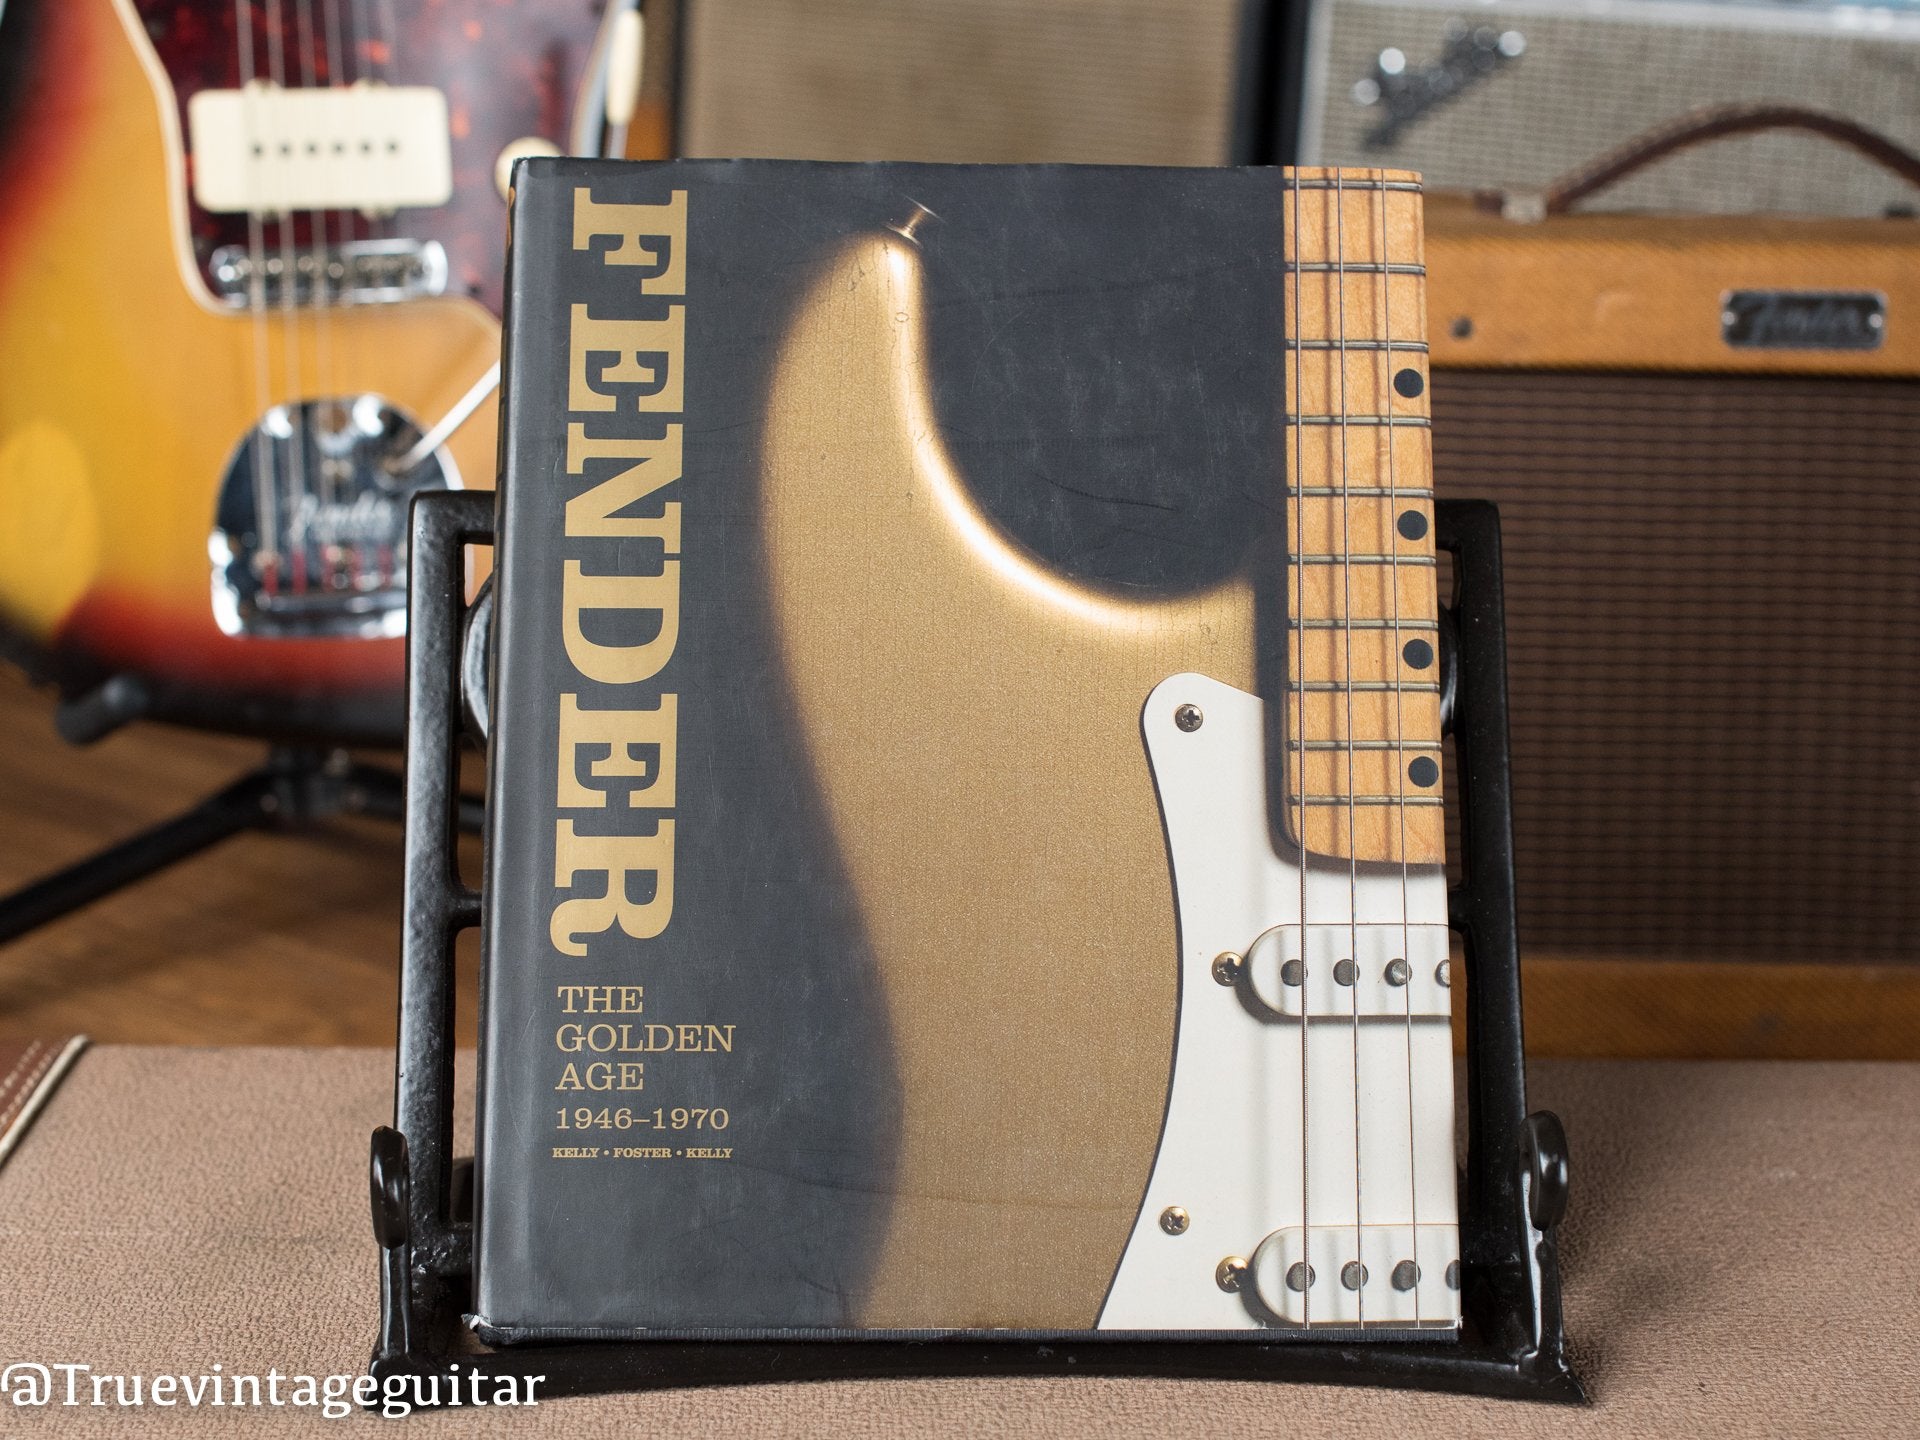 Vintage Guitar Library: Vintage Fender Book